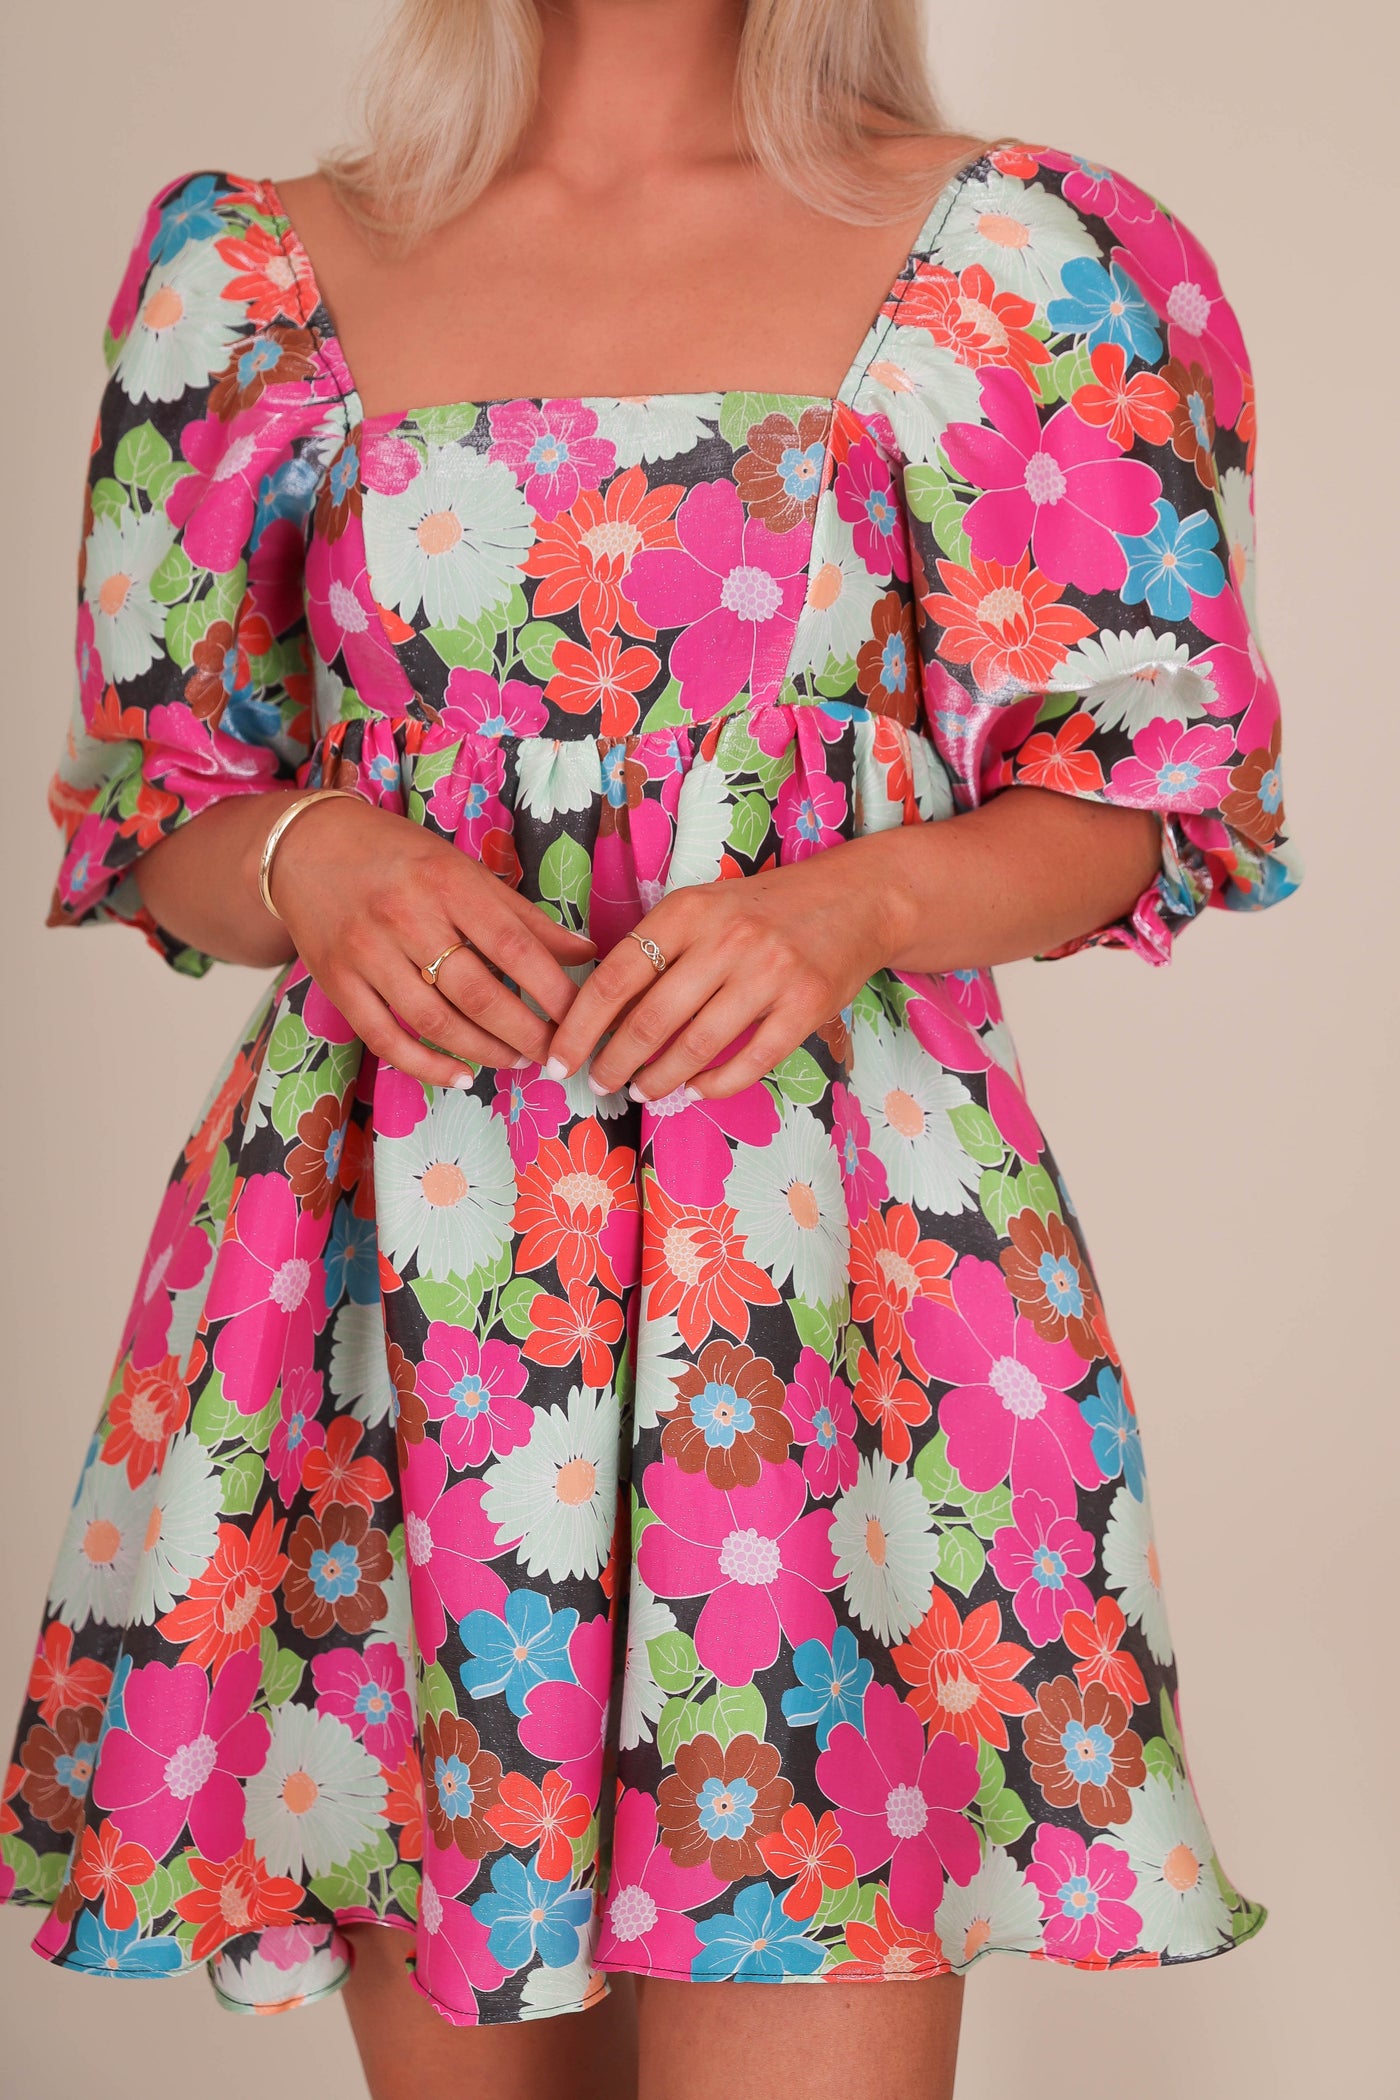 Colorful Babydoll Dress- Vintage Inspired Dress- Storia Dresses